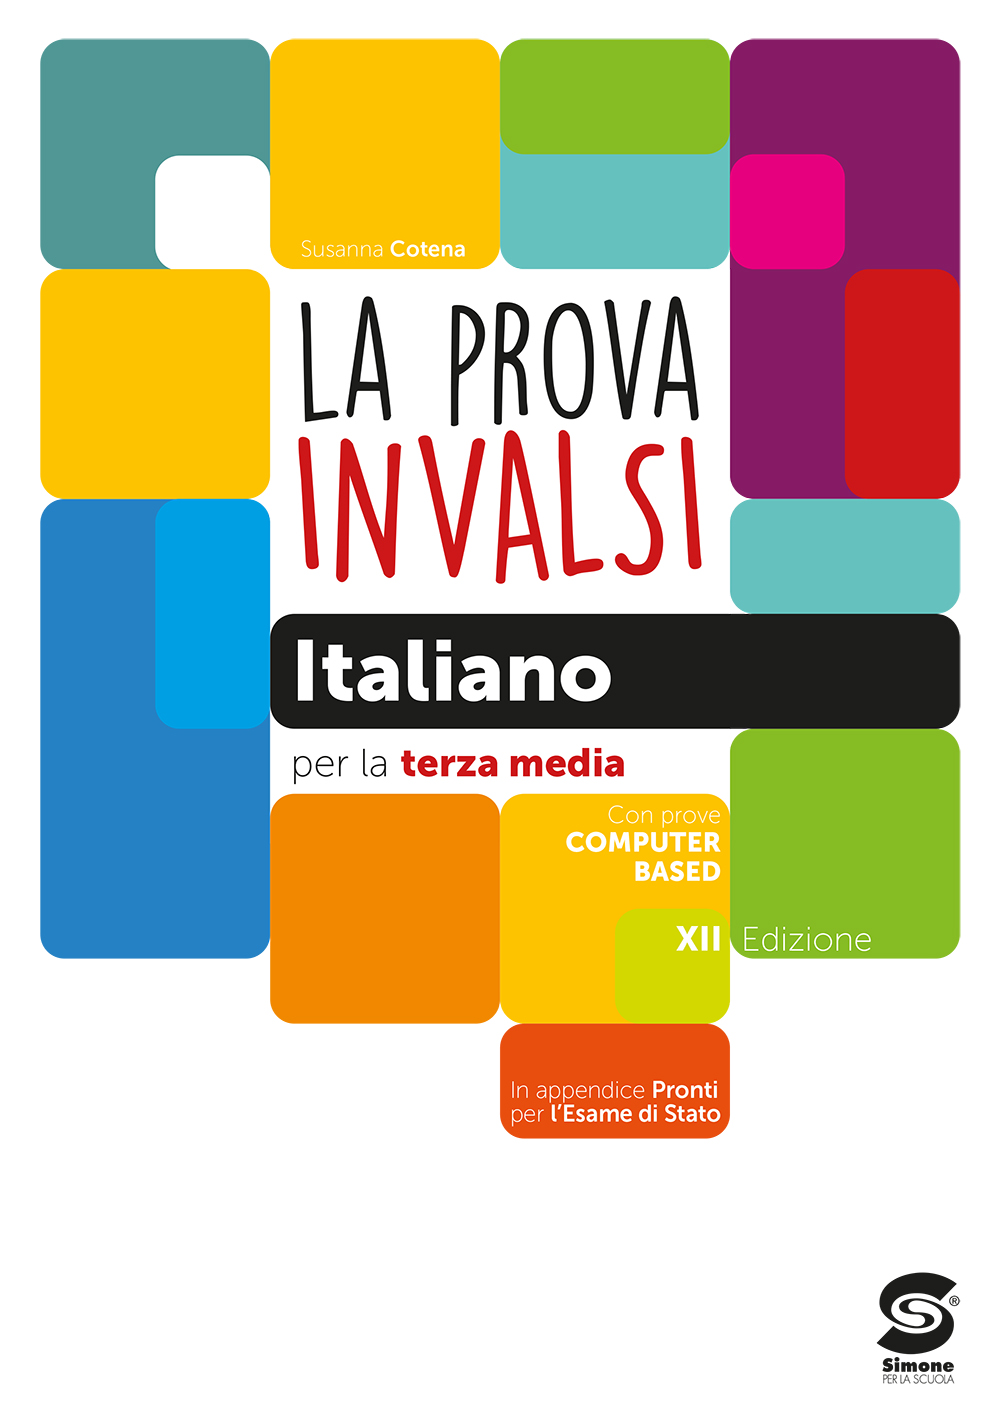 La prova INVALSI Italiano per la terza media - S16/2021 - Simone Scuola